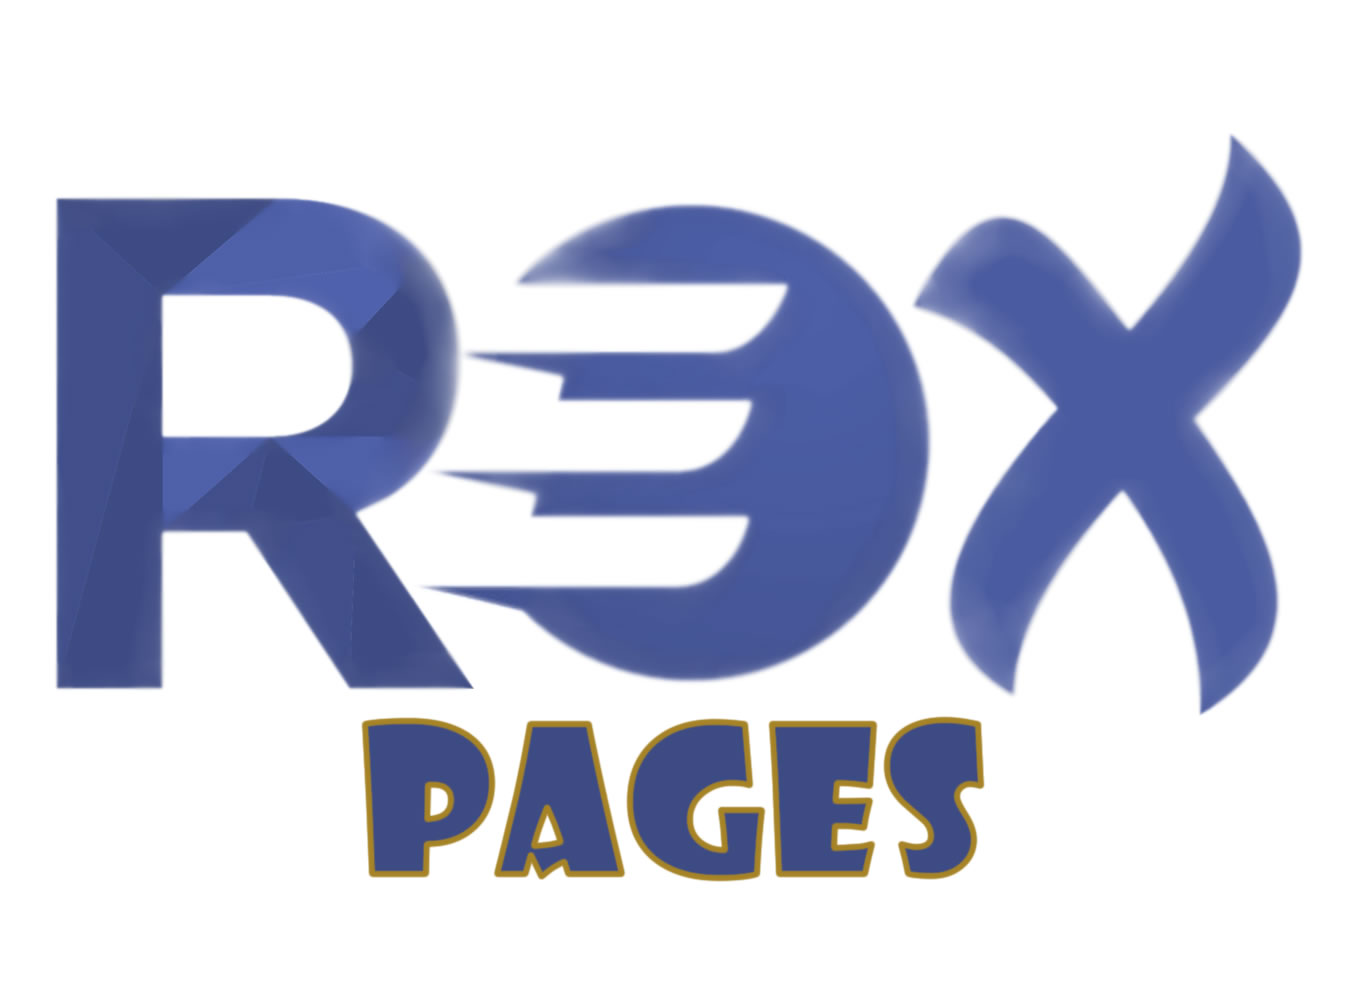 (c) Rexpages.com